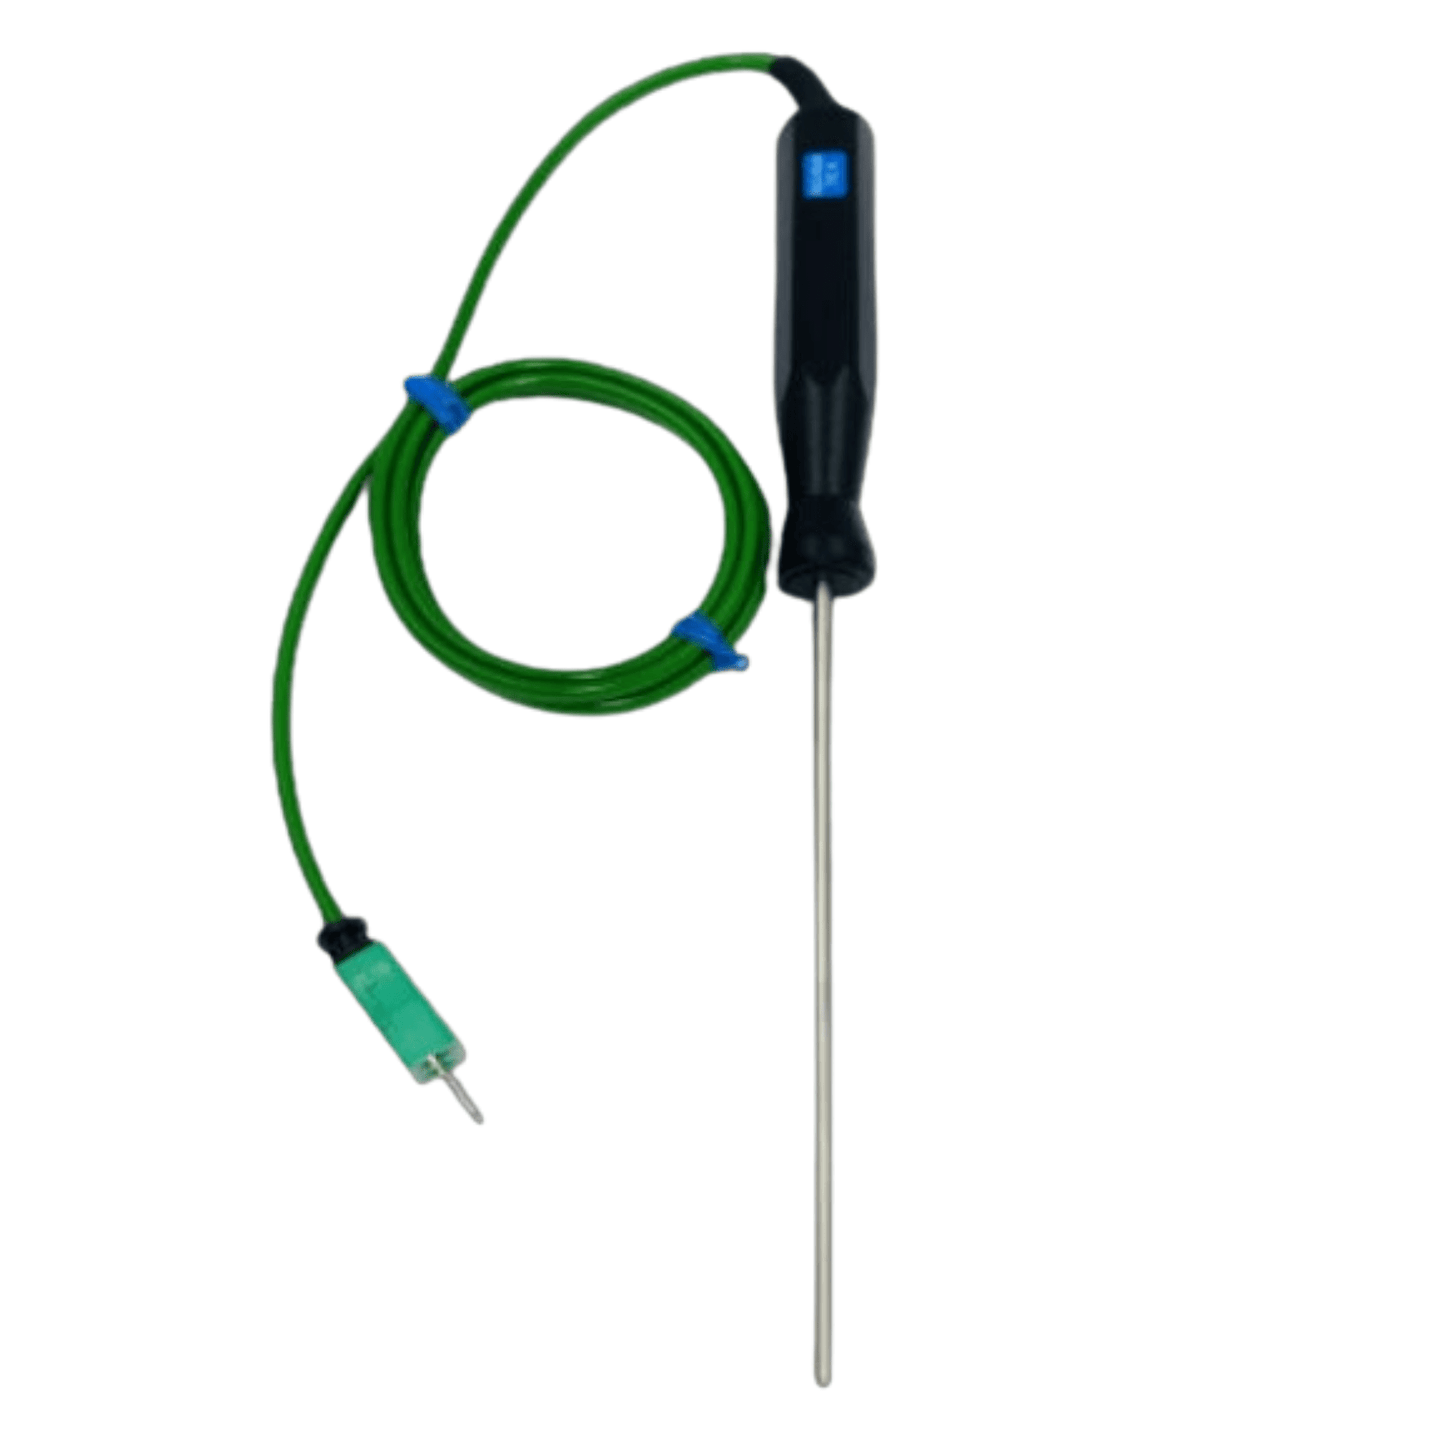 Un classeur de sonde de température vert auquel est attaché un fil qui mesure la température de Thermomètre.fr.